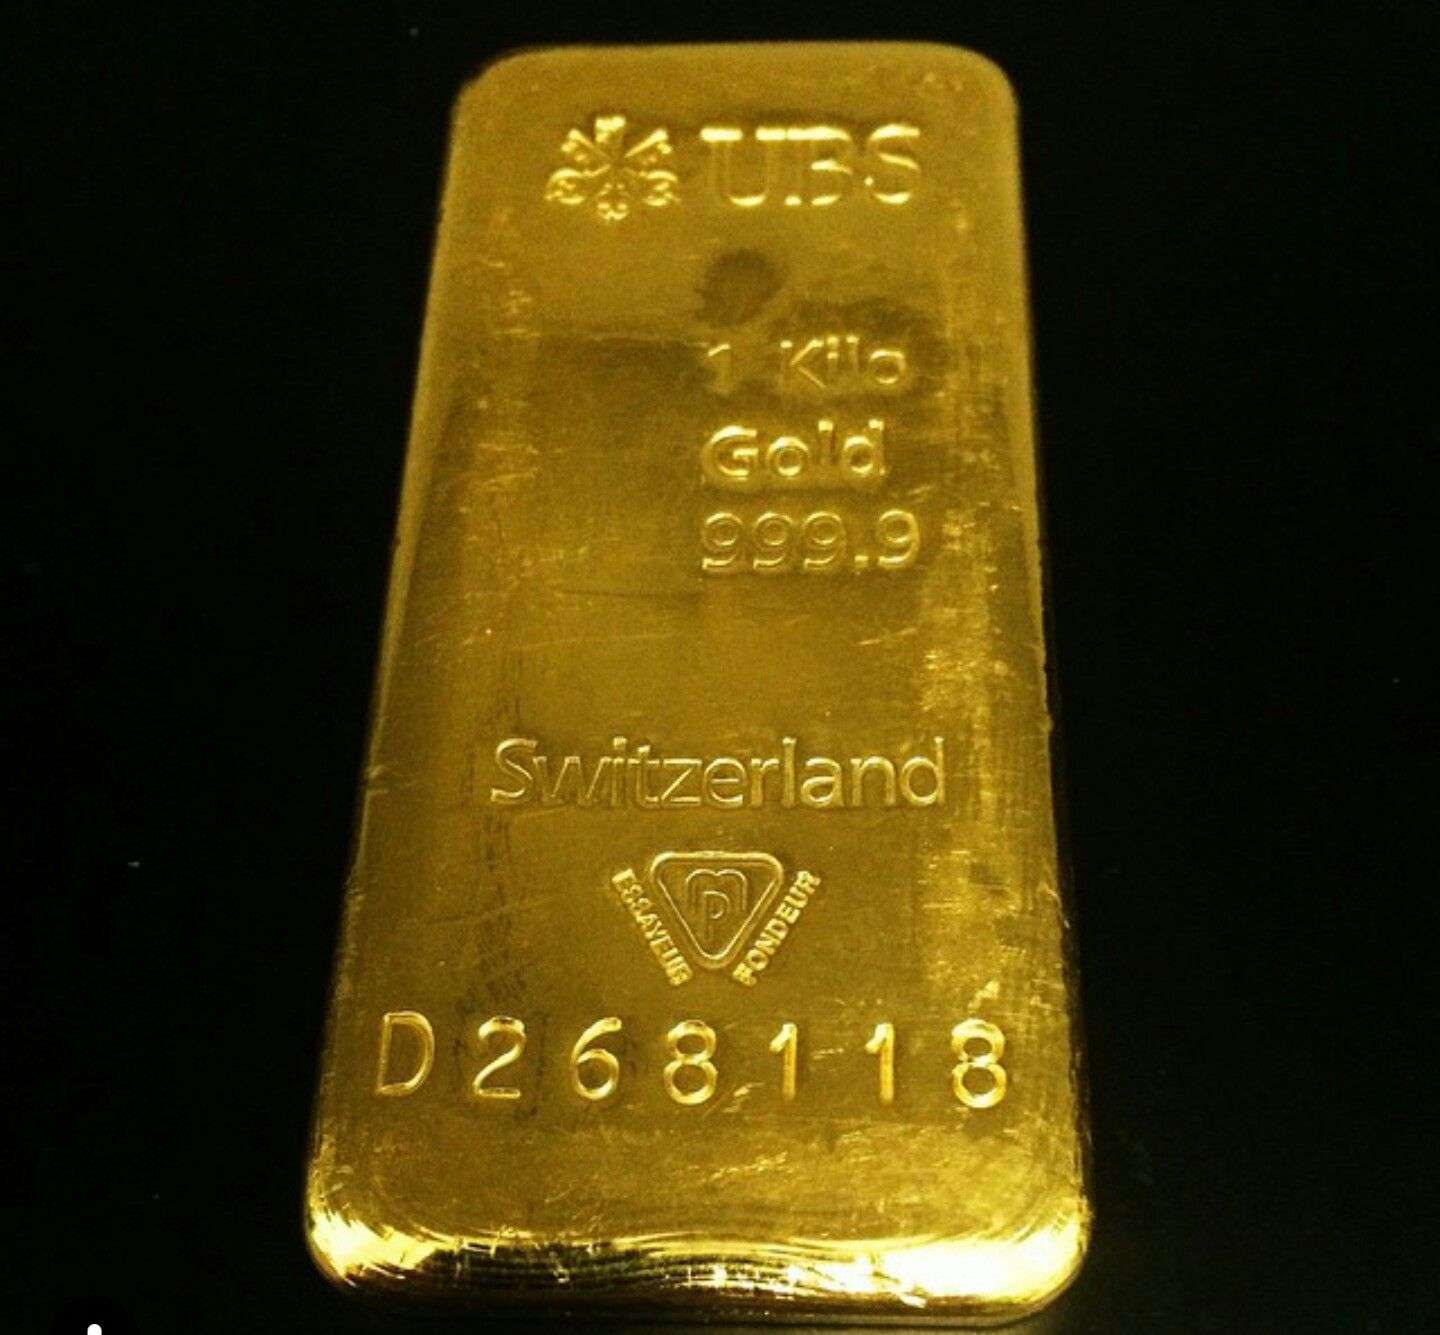 1 Kilo of Gold